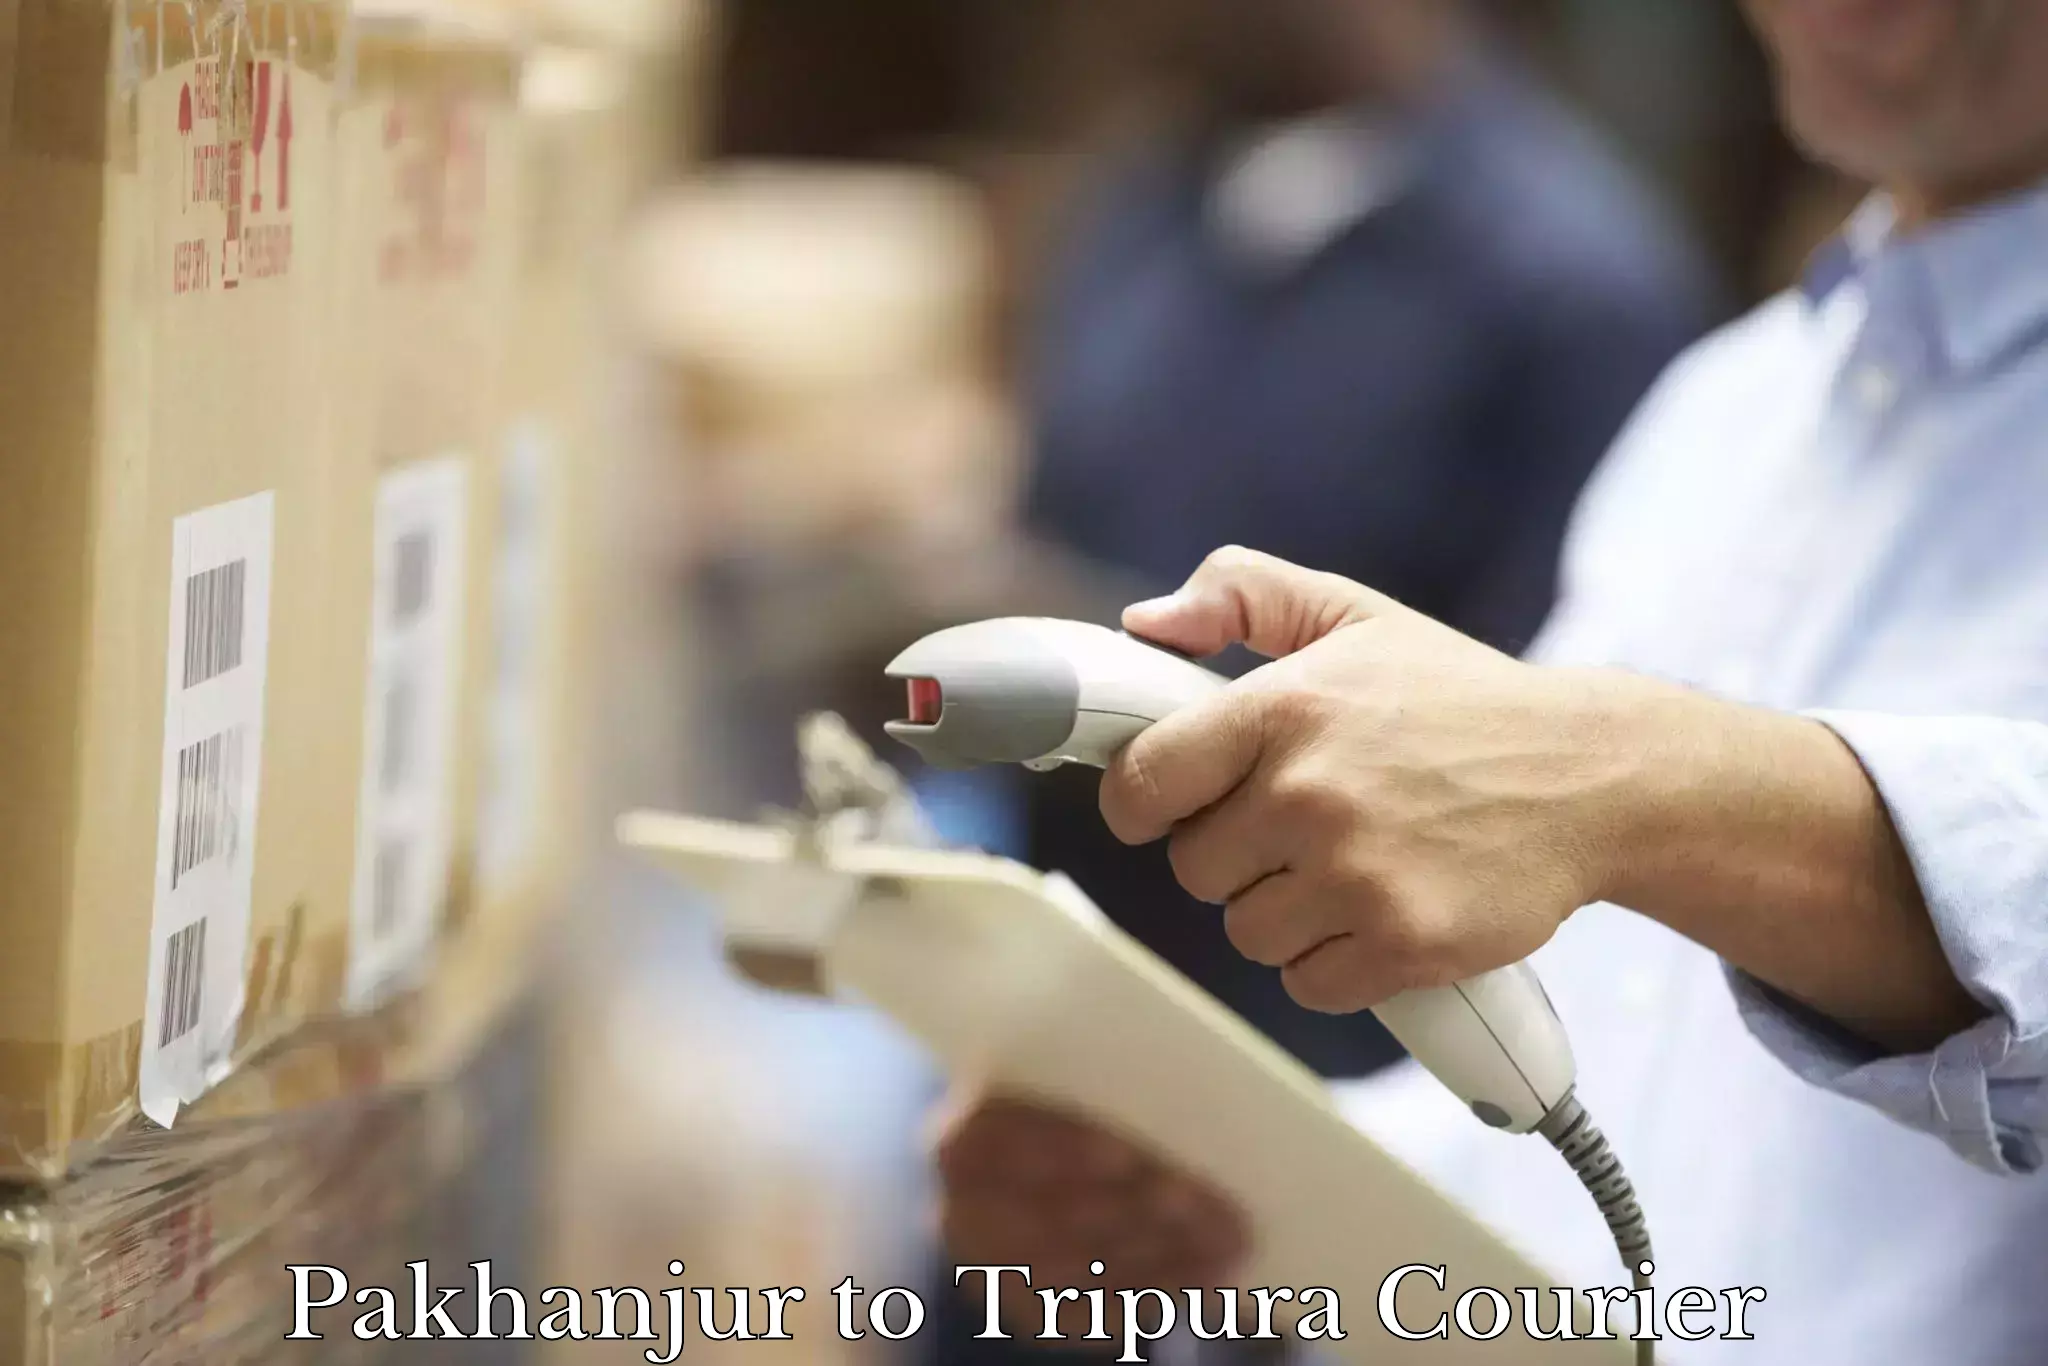 Digital courier platforms Pakhanjur to Tripura